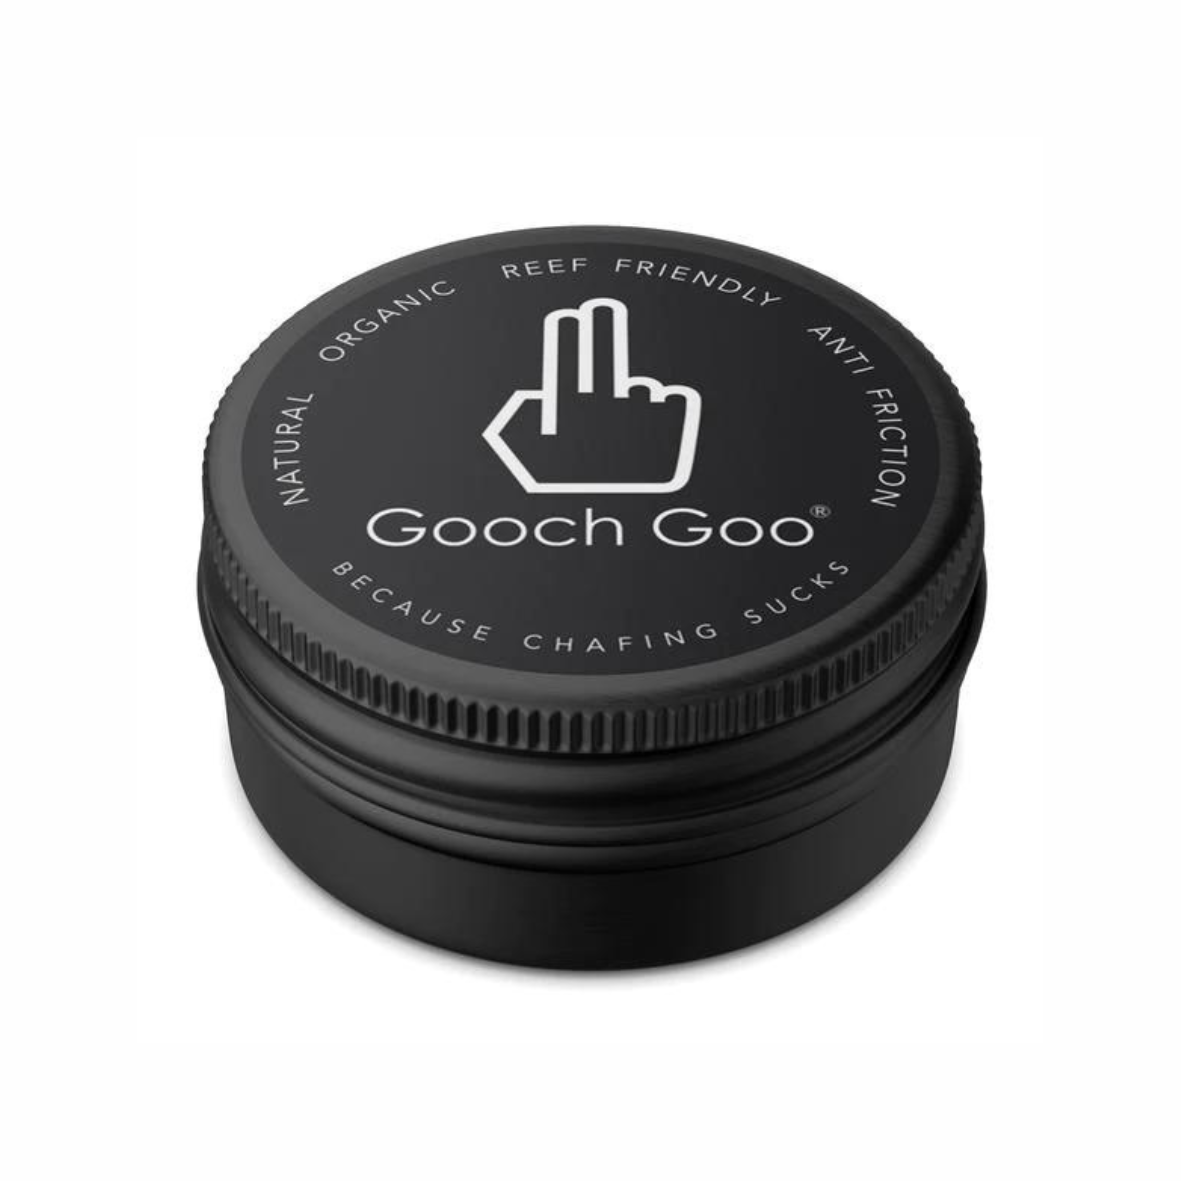 Gooch Goo - Anti-Chafe Tub